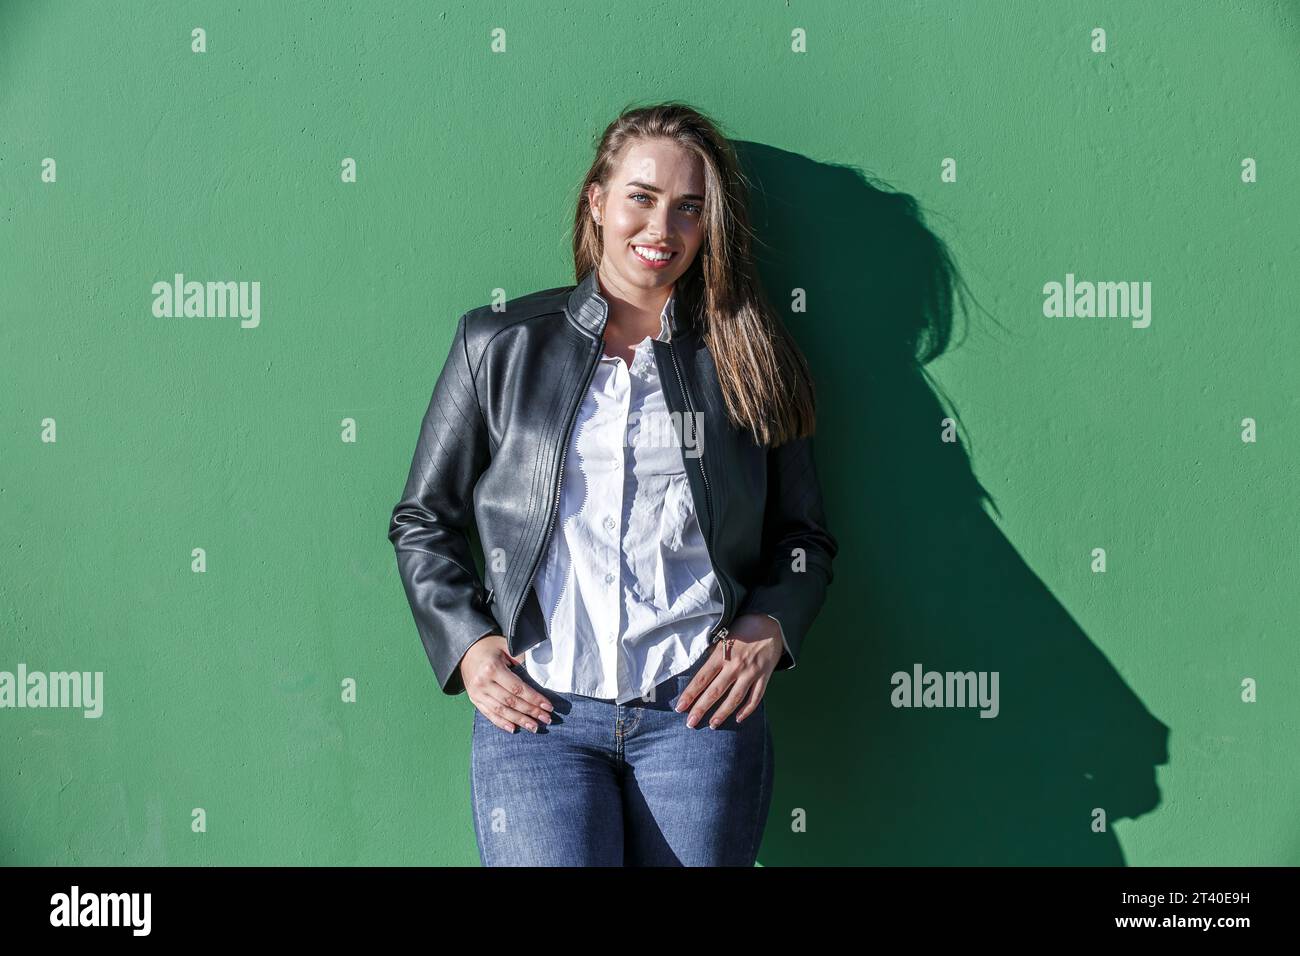 Selbstbewusste junge, lächelnde Frau mit Lederjacke und Jeans, die Finger in die Taschen steckt, während sie vor der grünen Wand mit Schatten des Sonnenlichts steht Stockfoto